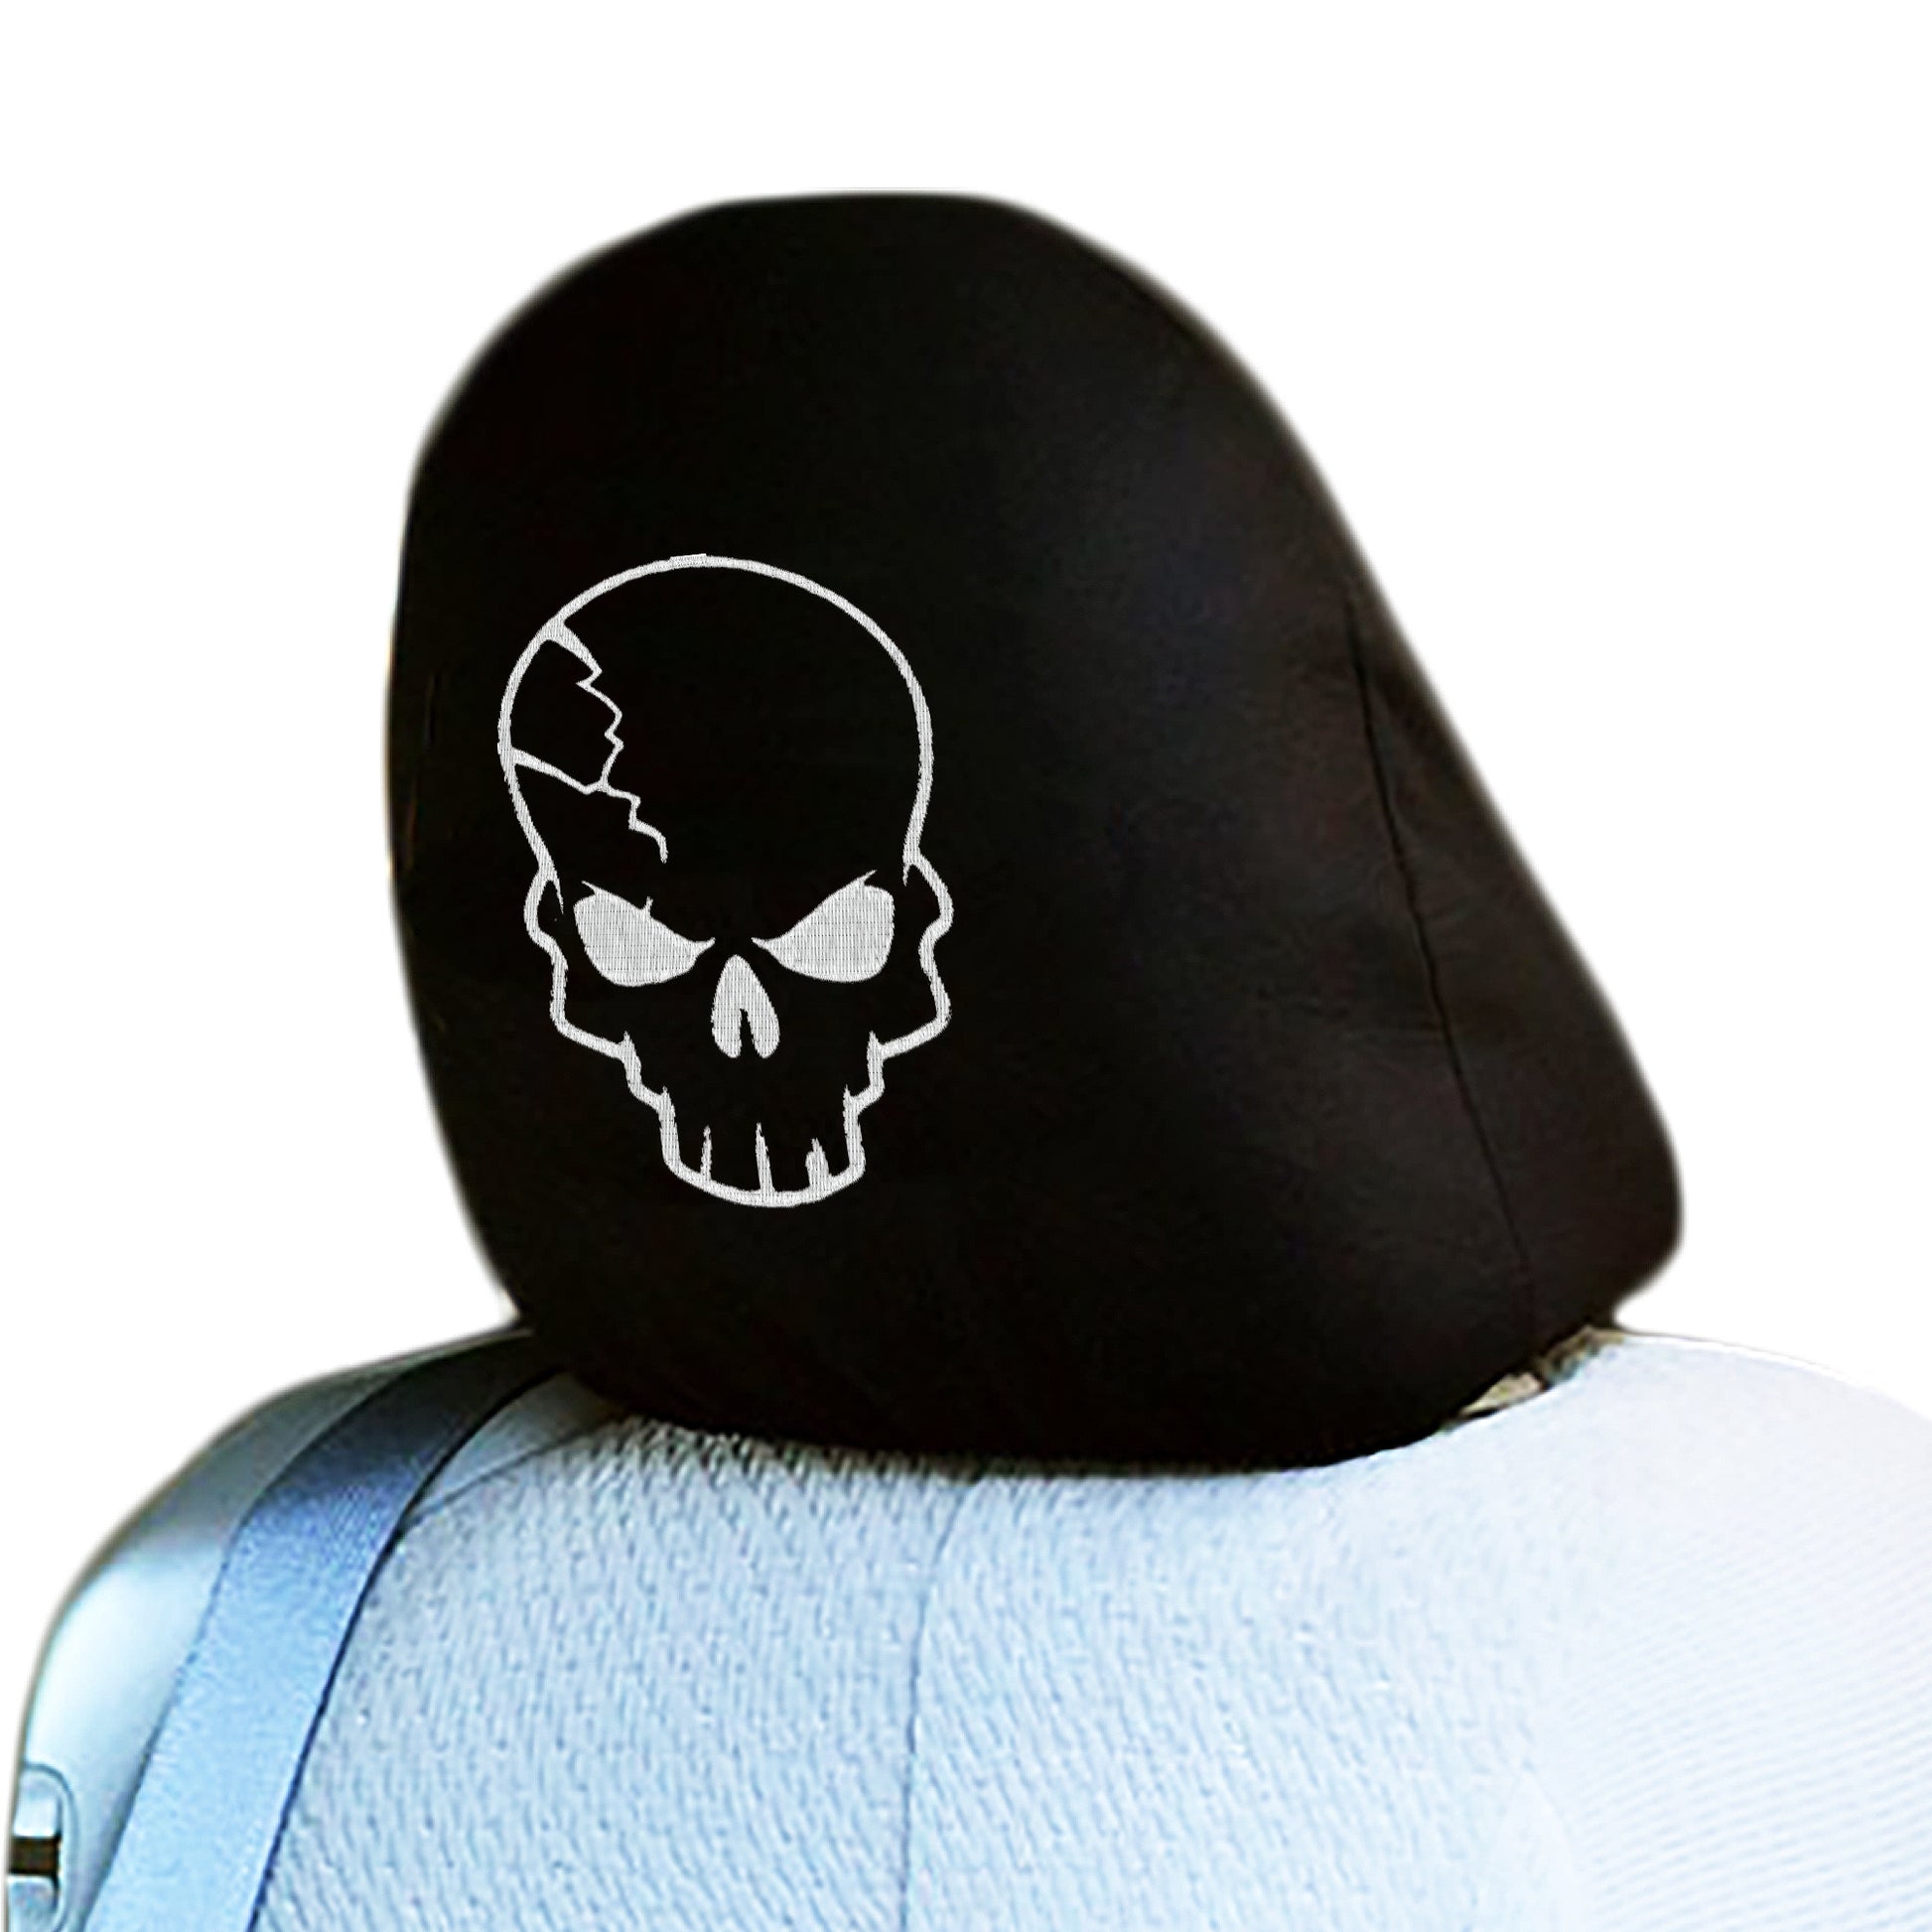 Skull design car headrest cover single